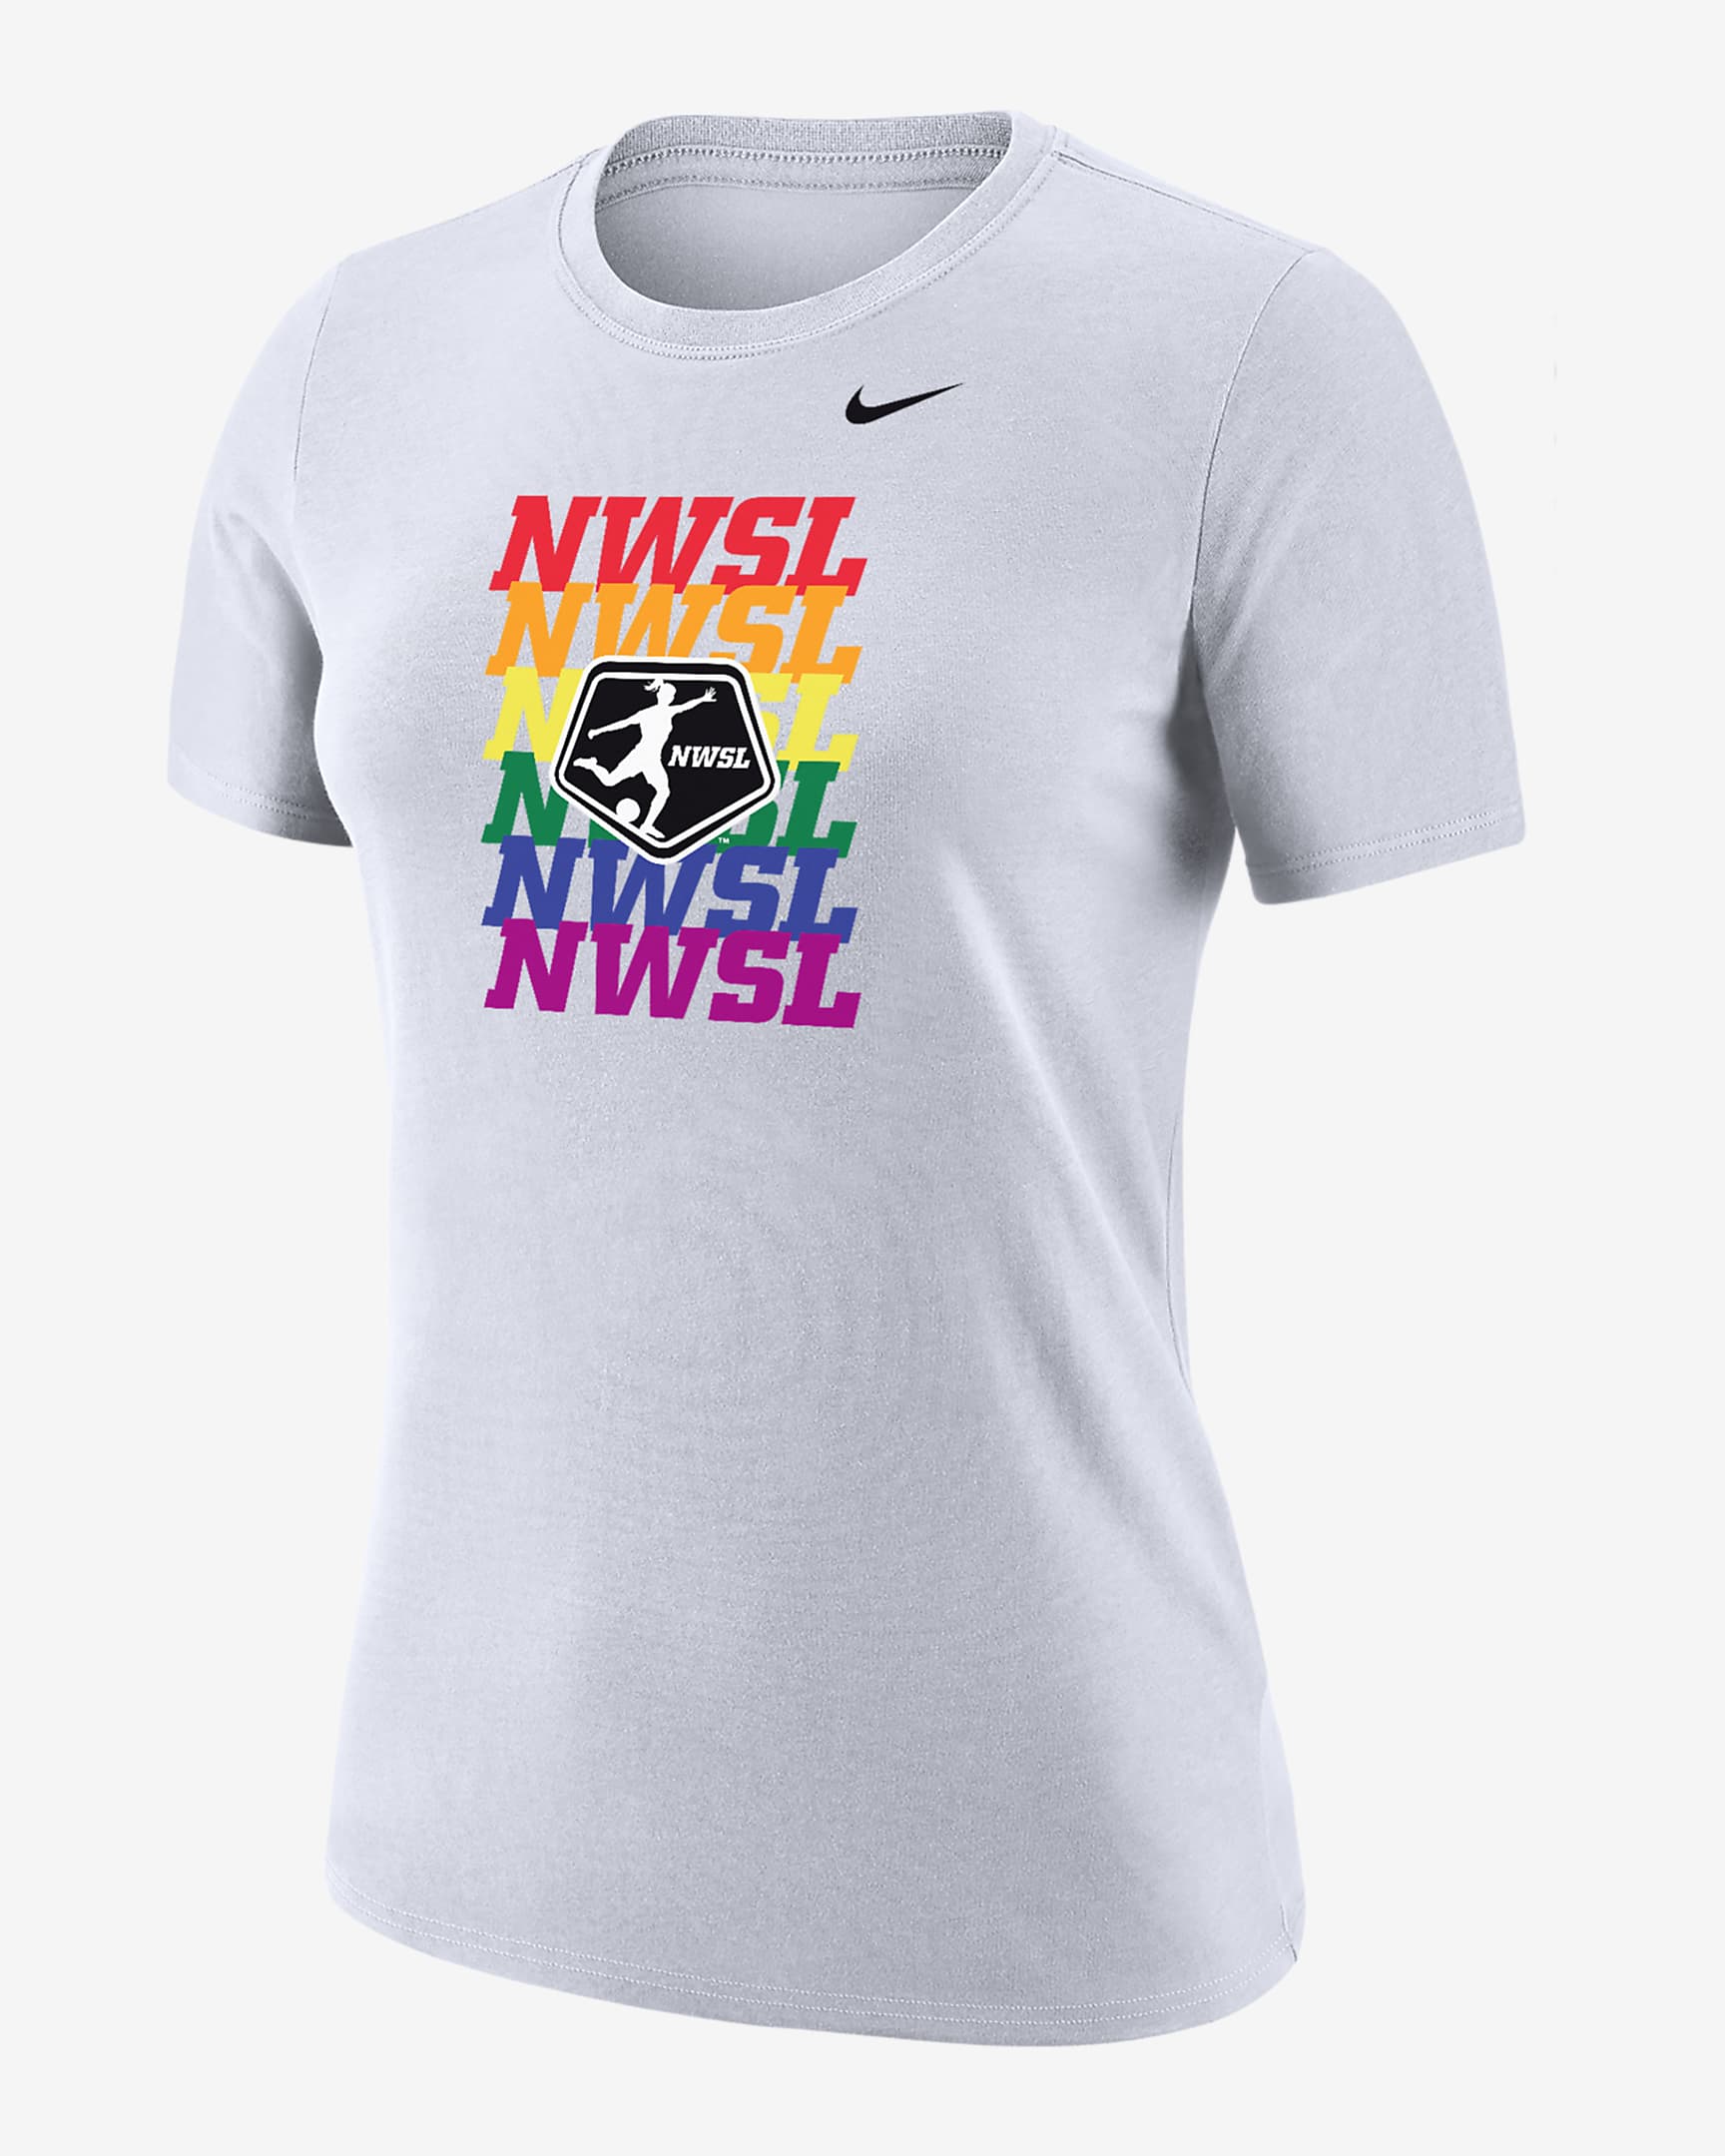 NWSL Women's Nike Soccer T-Shirt. Nike.com